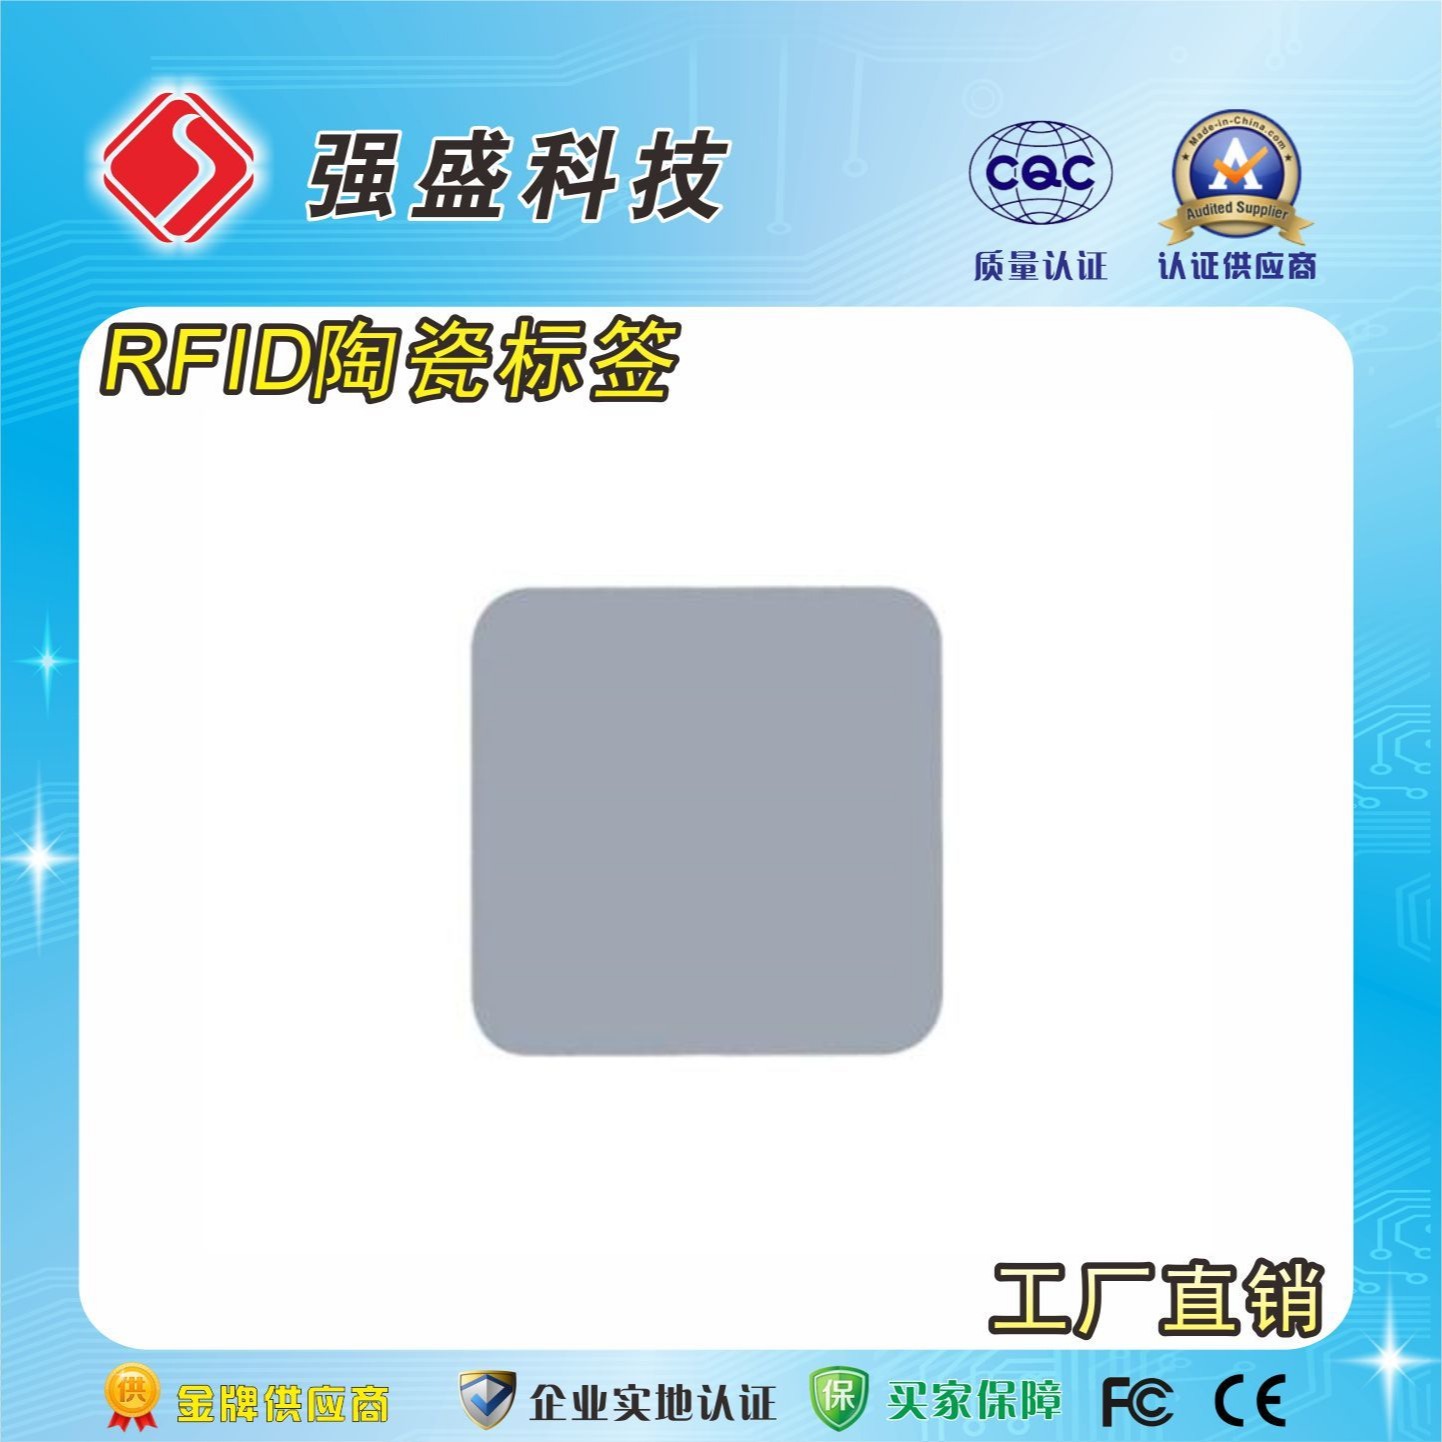 供应超高频RFID陶瓷标签 抗金属陶瓷标签 金属托盘管理标签